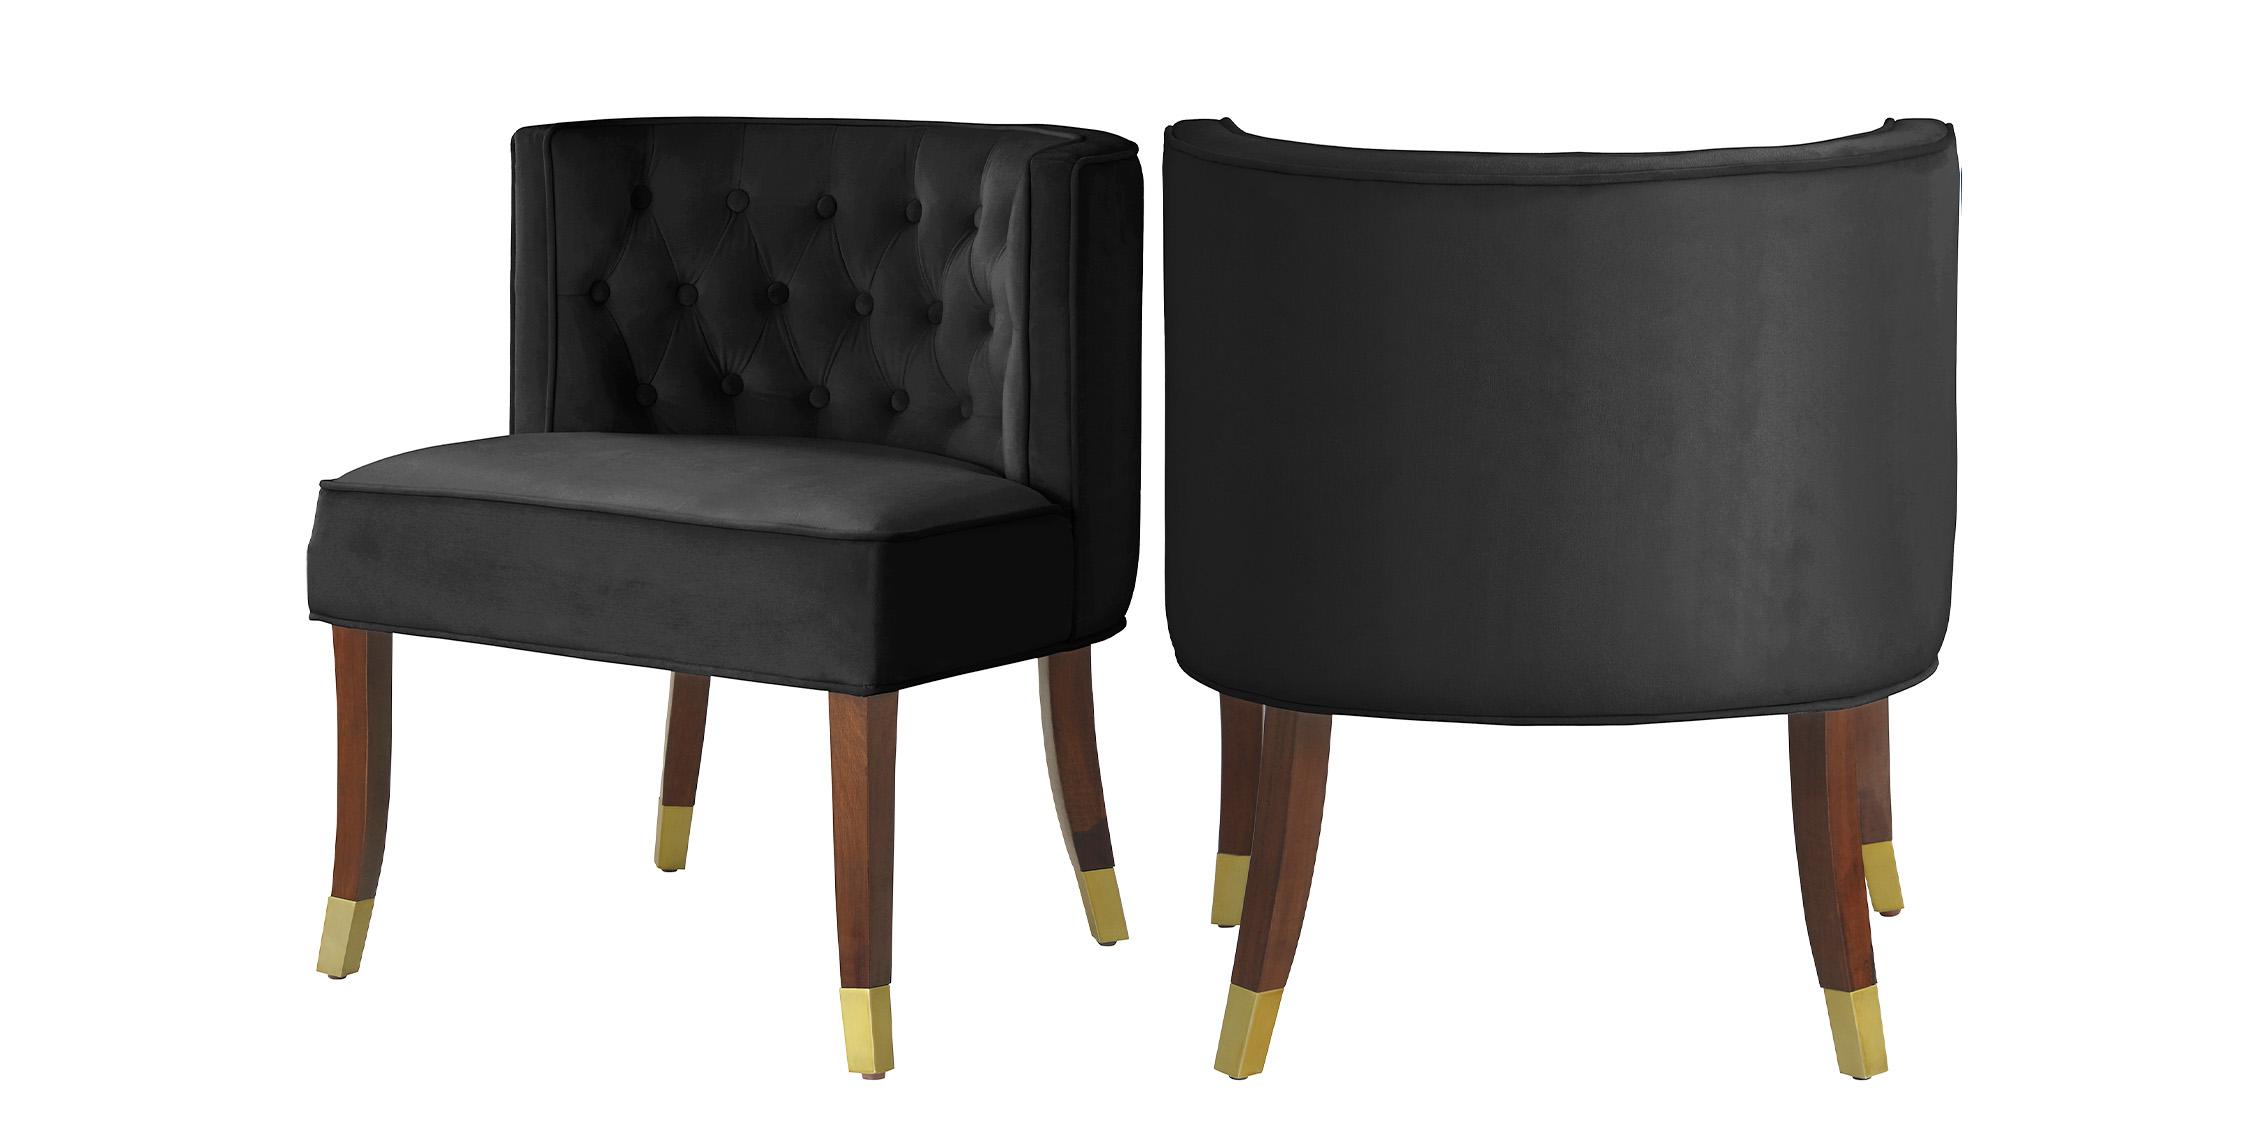 Classic Dining Chair Set PERRY 933Black-C 933Black-C-Set-2 in Espresso, Black Velvet